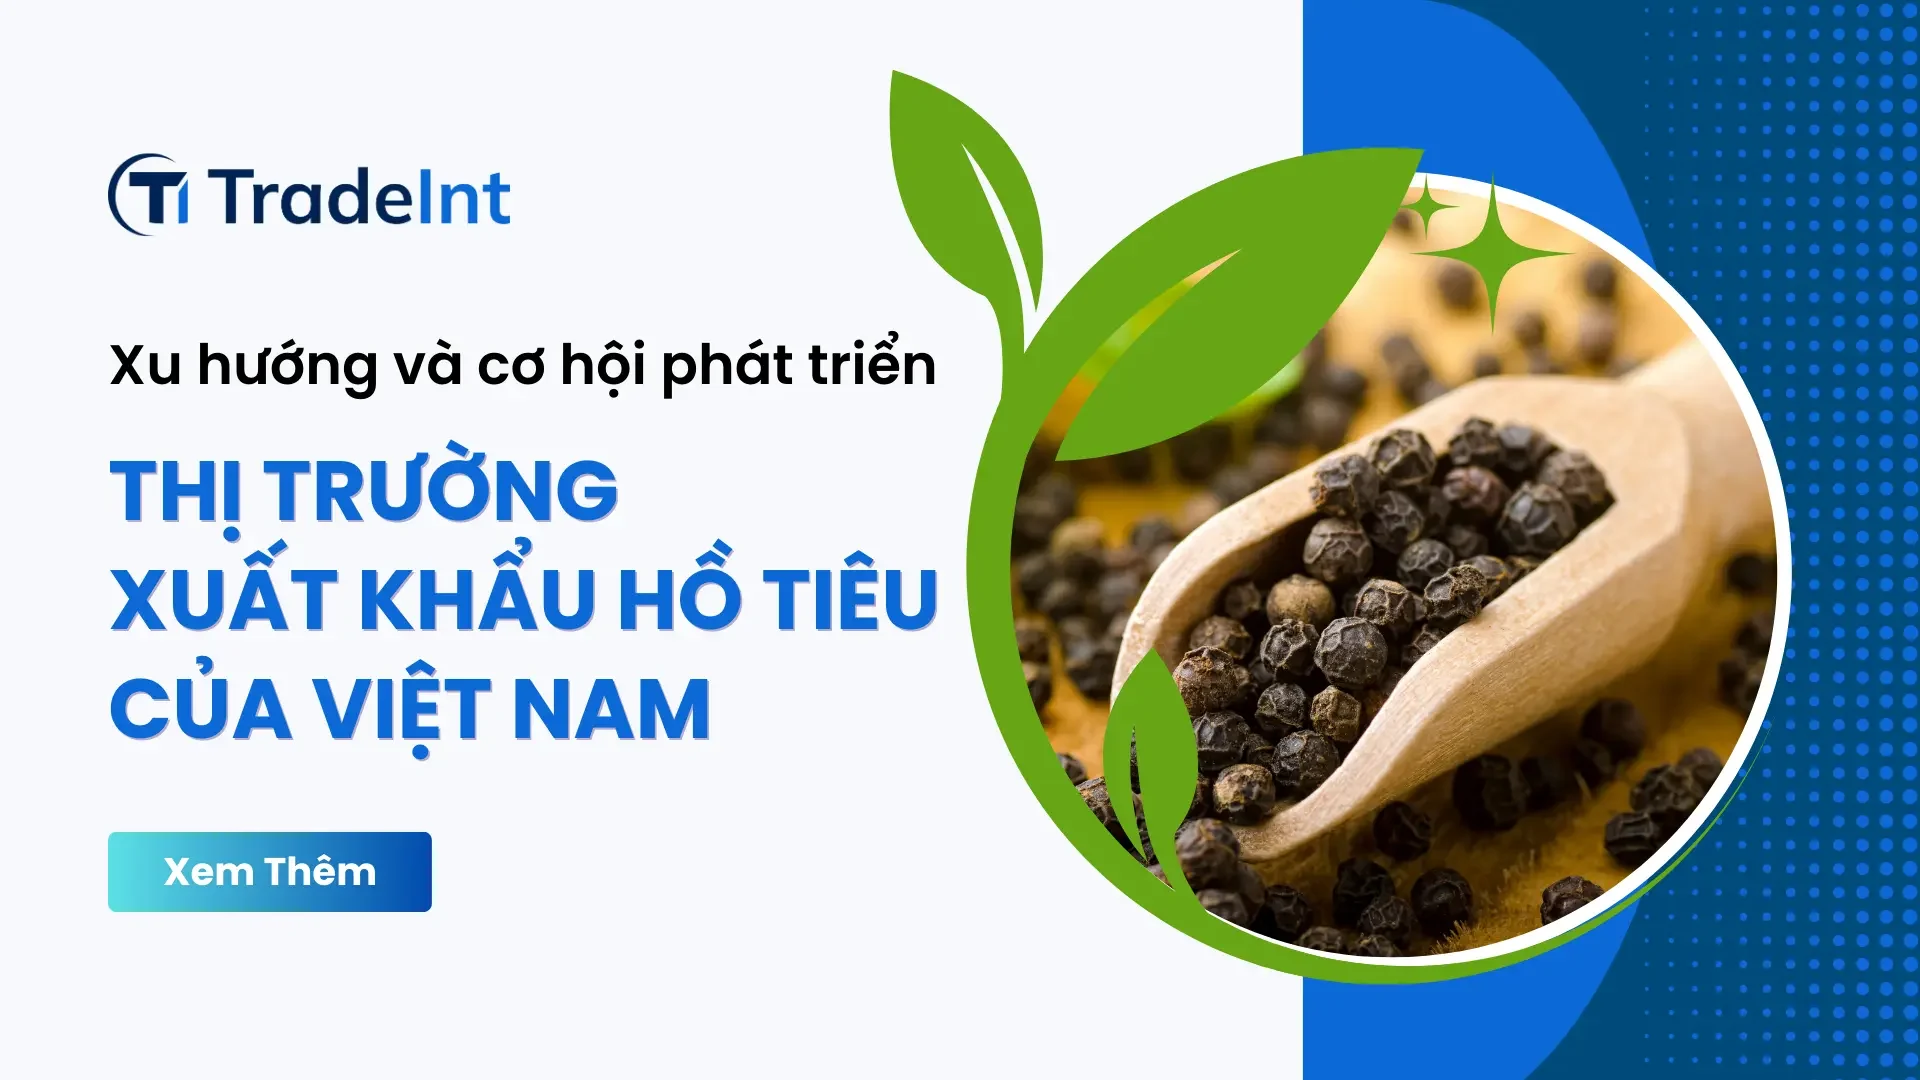 Các thị trường xuất khẩu hồ tiêu của Việt Nam